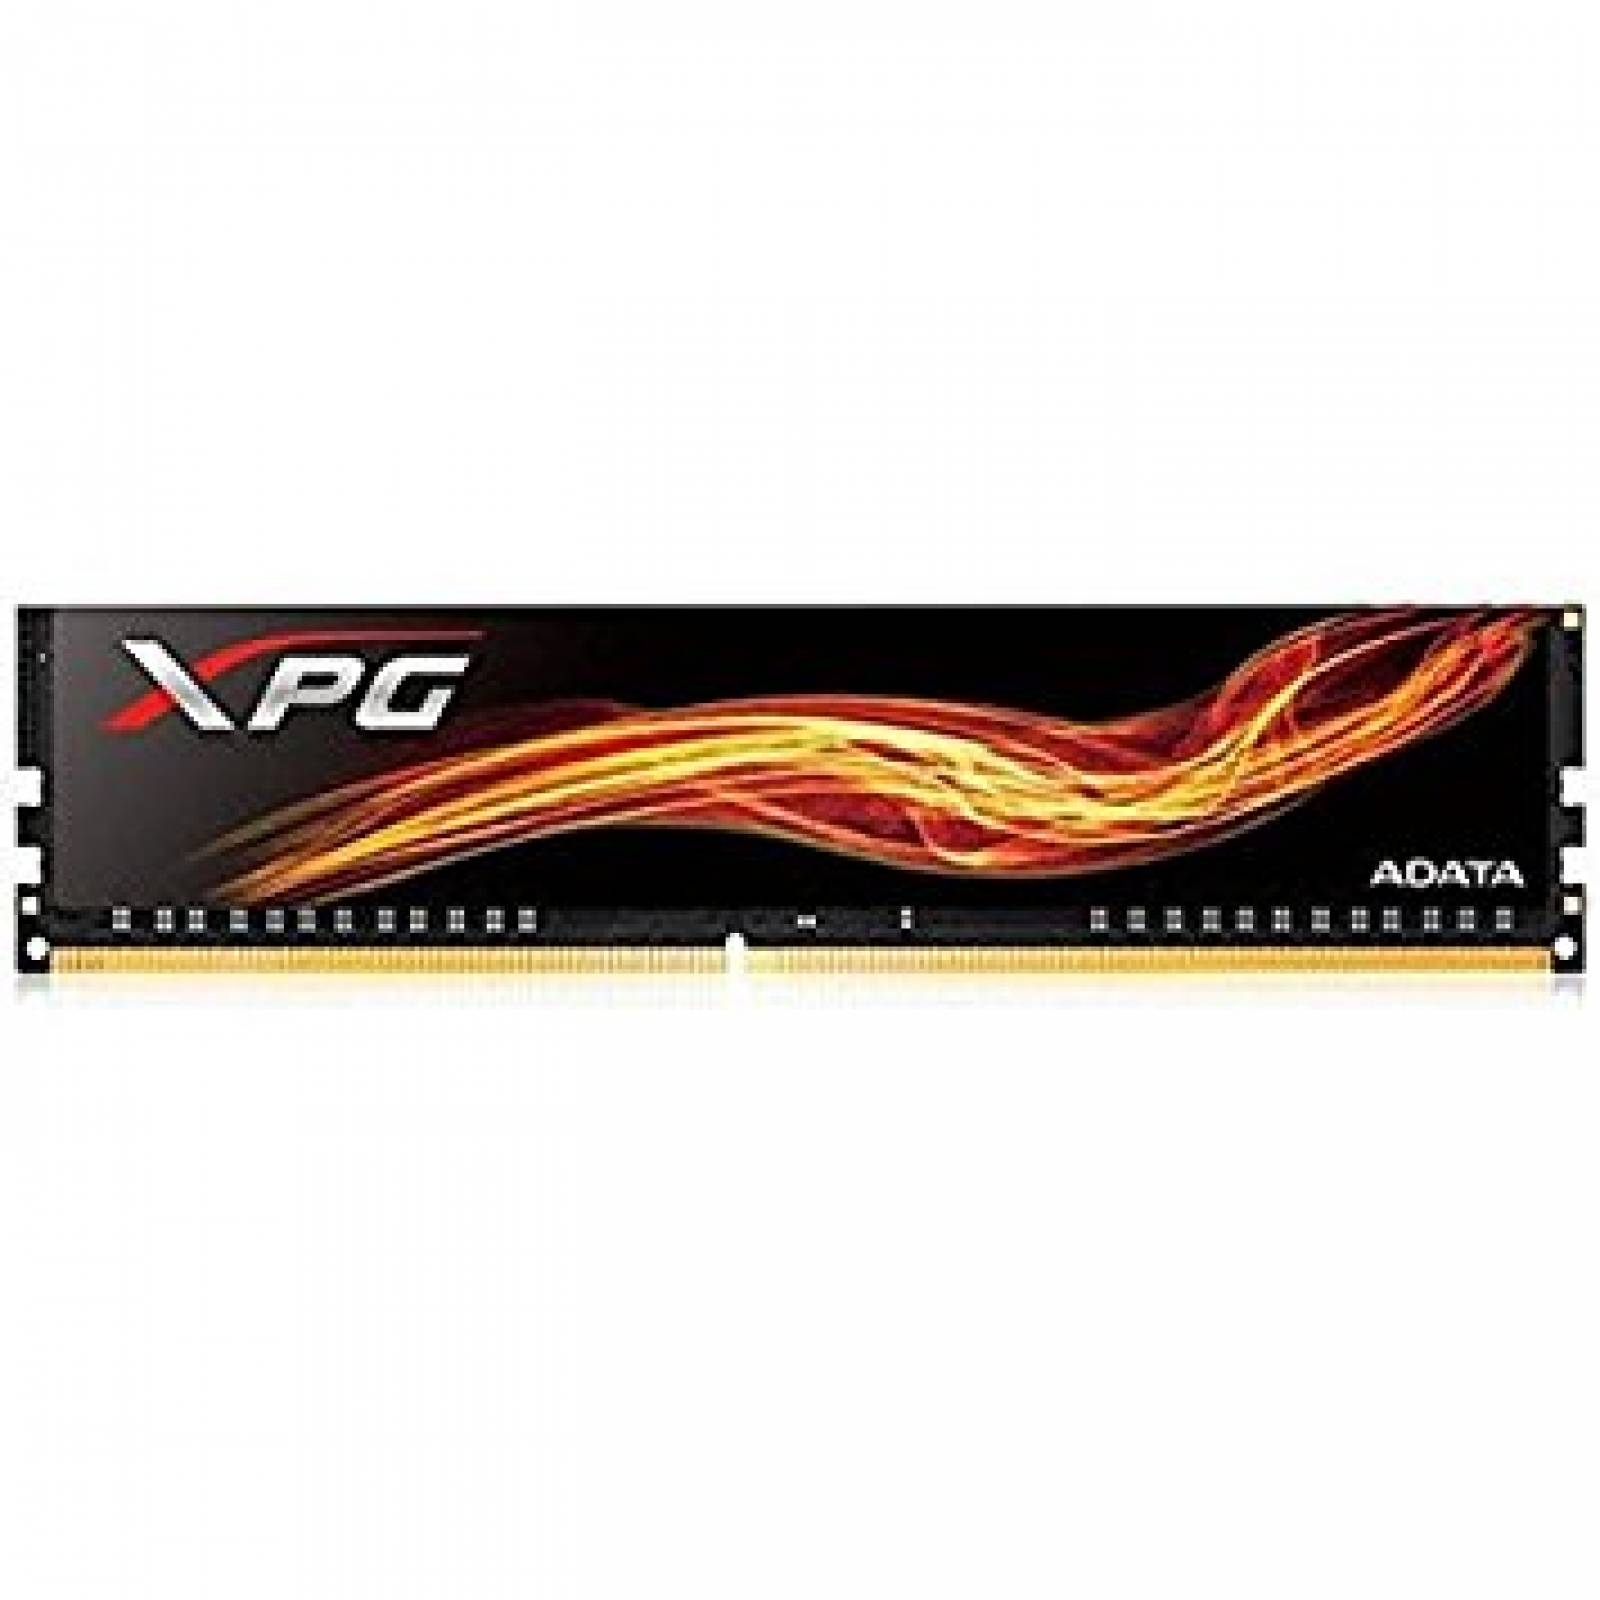 Memoria XPG Flame Adata 4GB DDR4 2400 U-DIMM